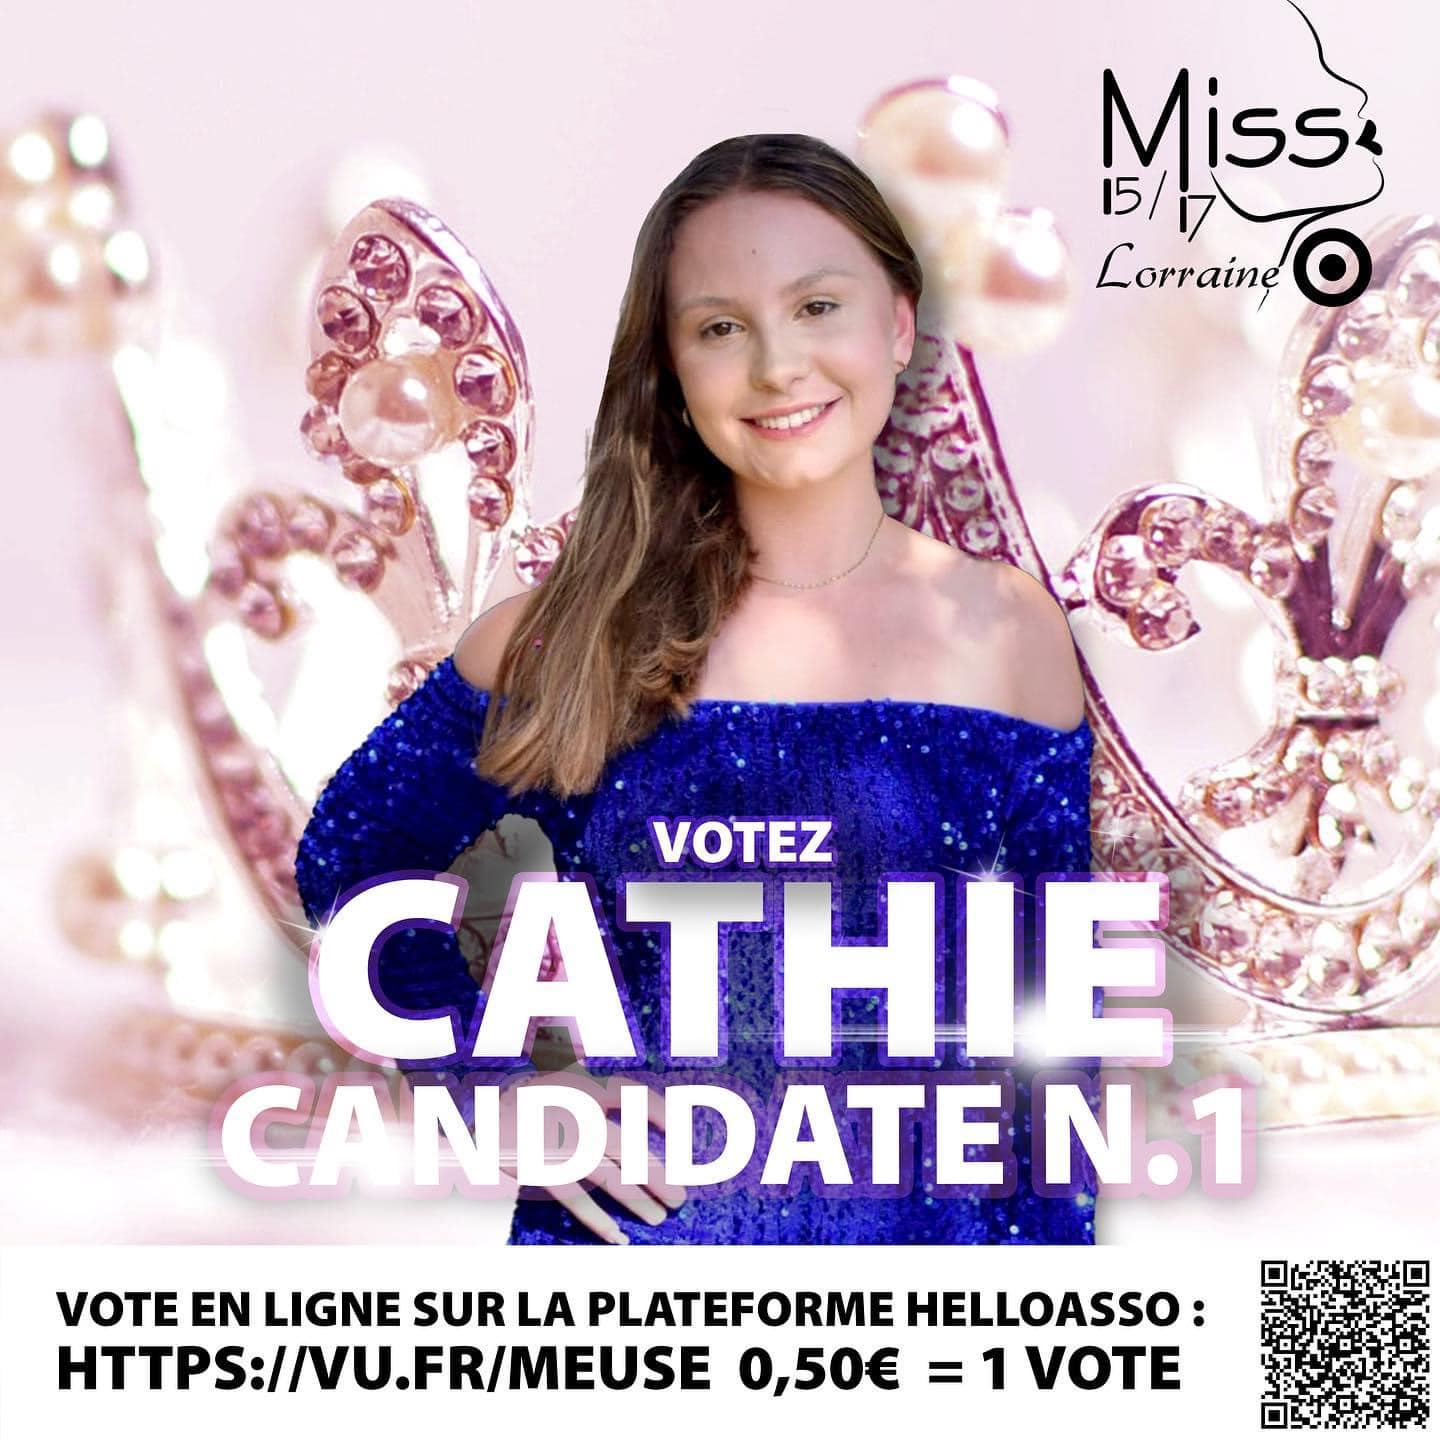 Candidates_Vosgiennes_Miss_15-17_Lorraine (9)